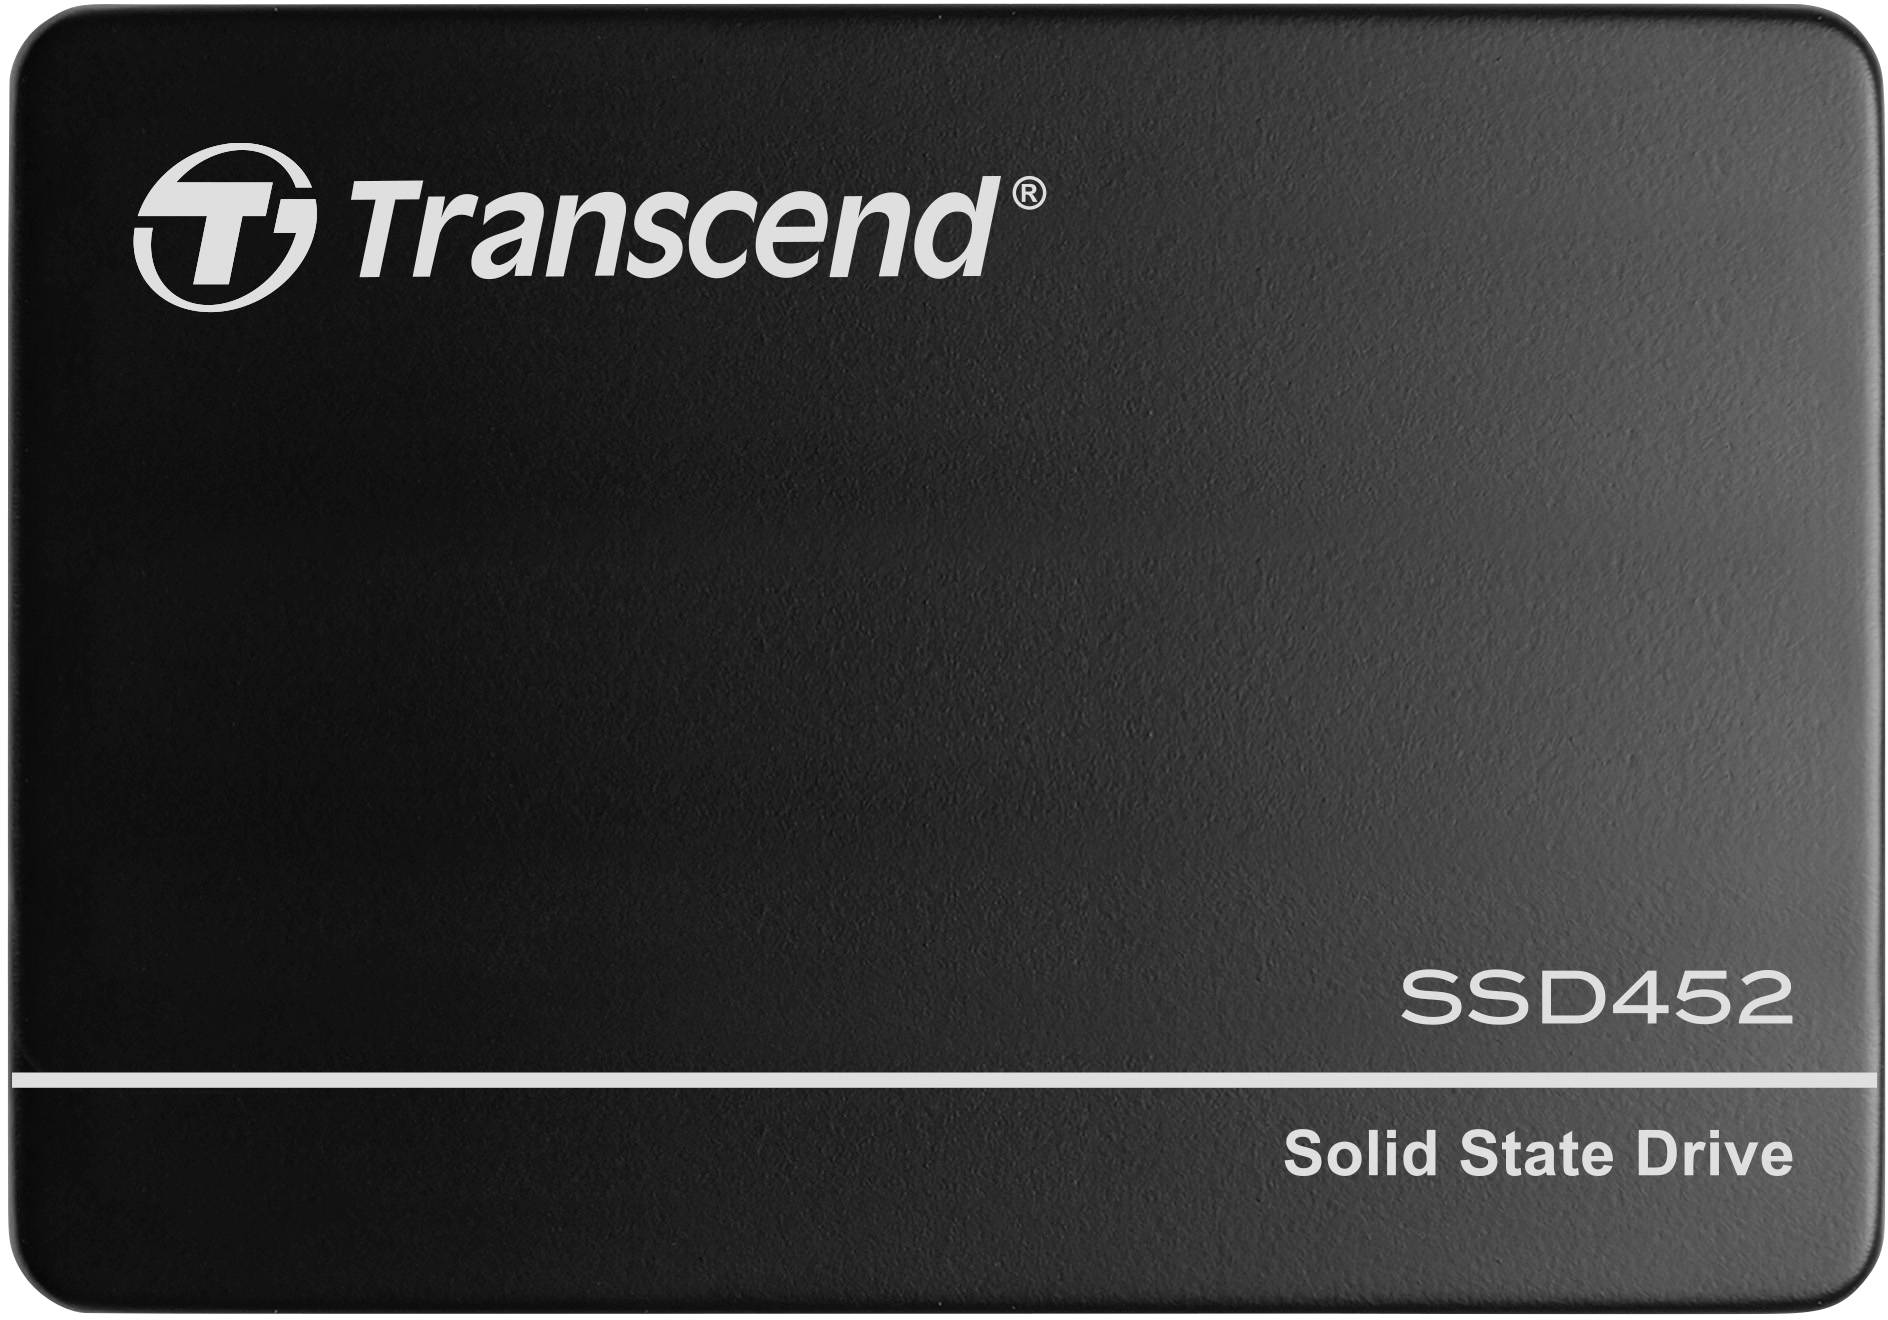 TRANSCEND SSD452K-I 256GB